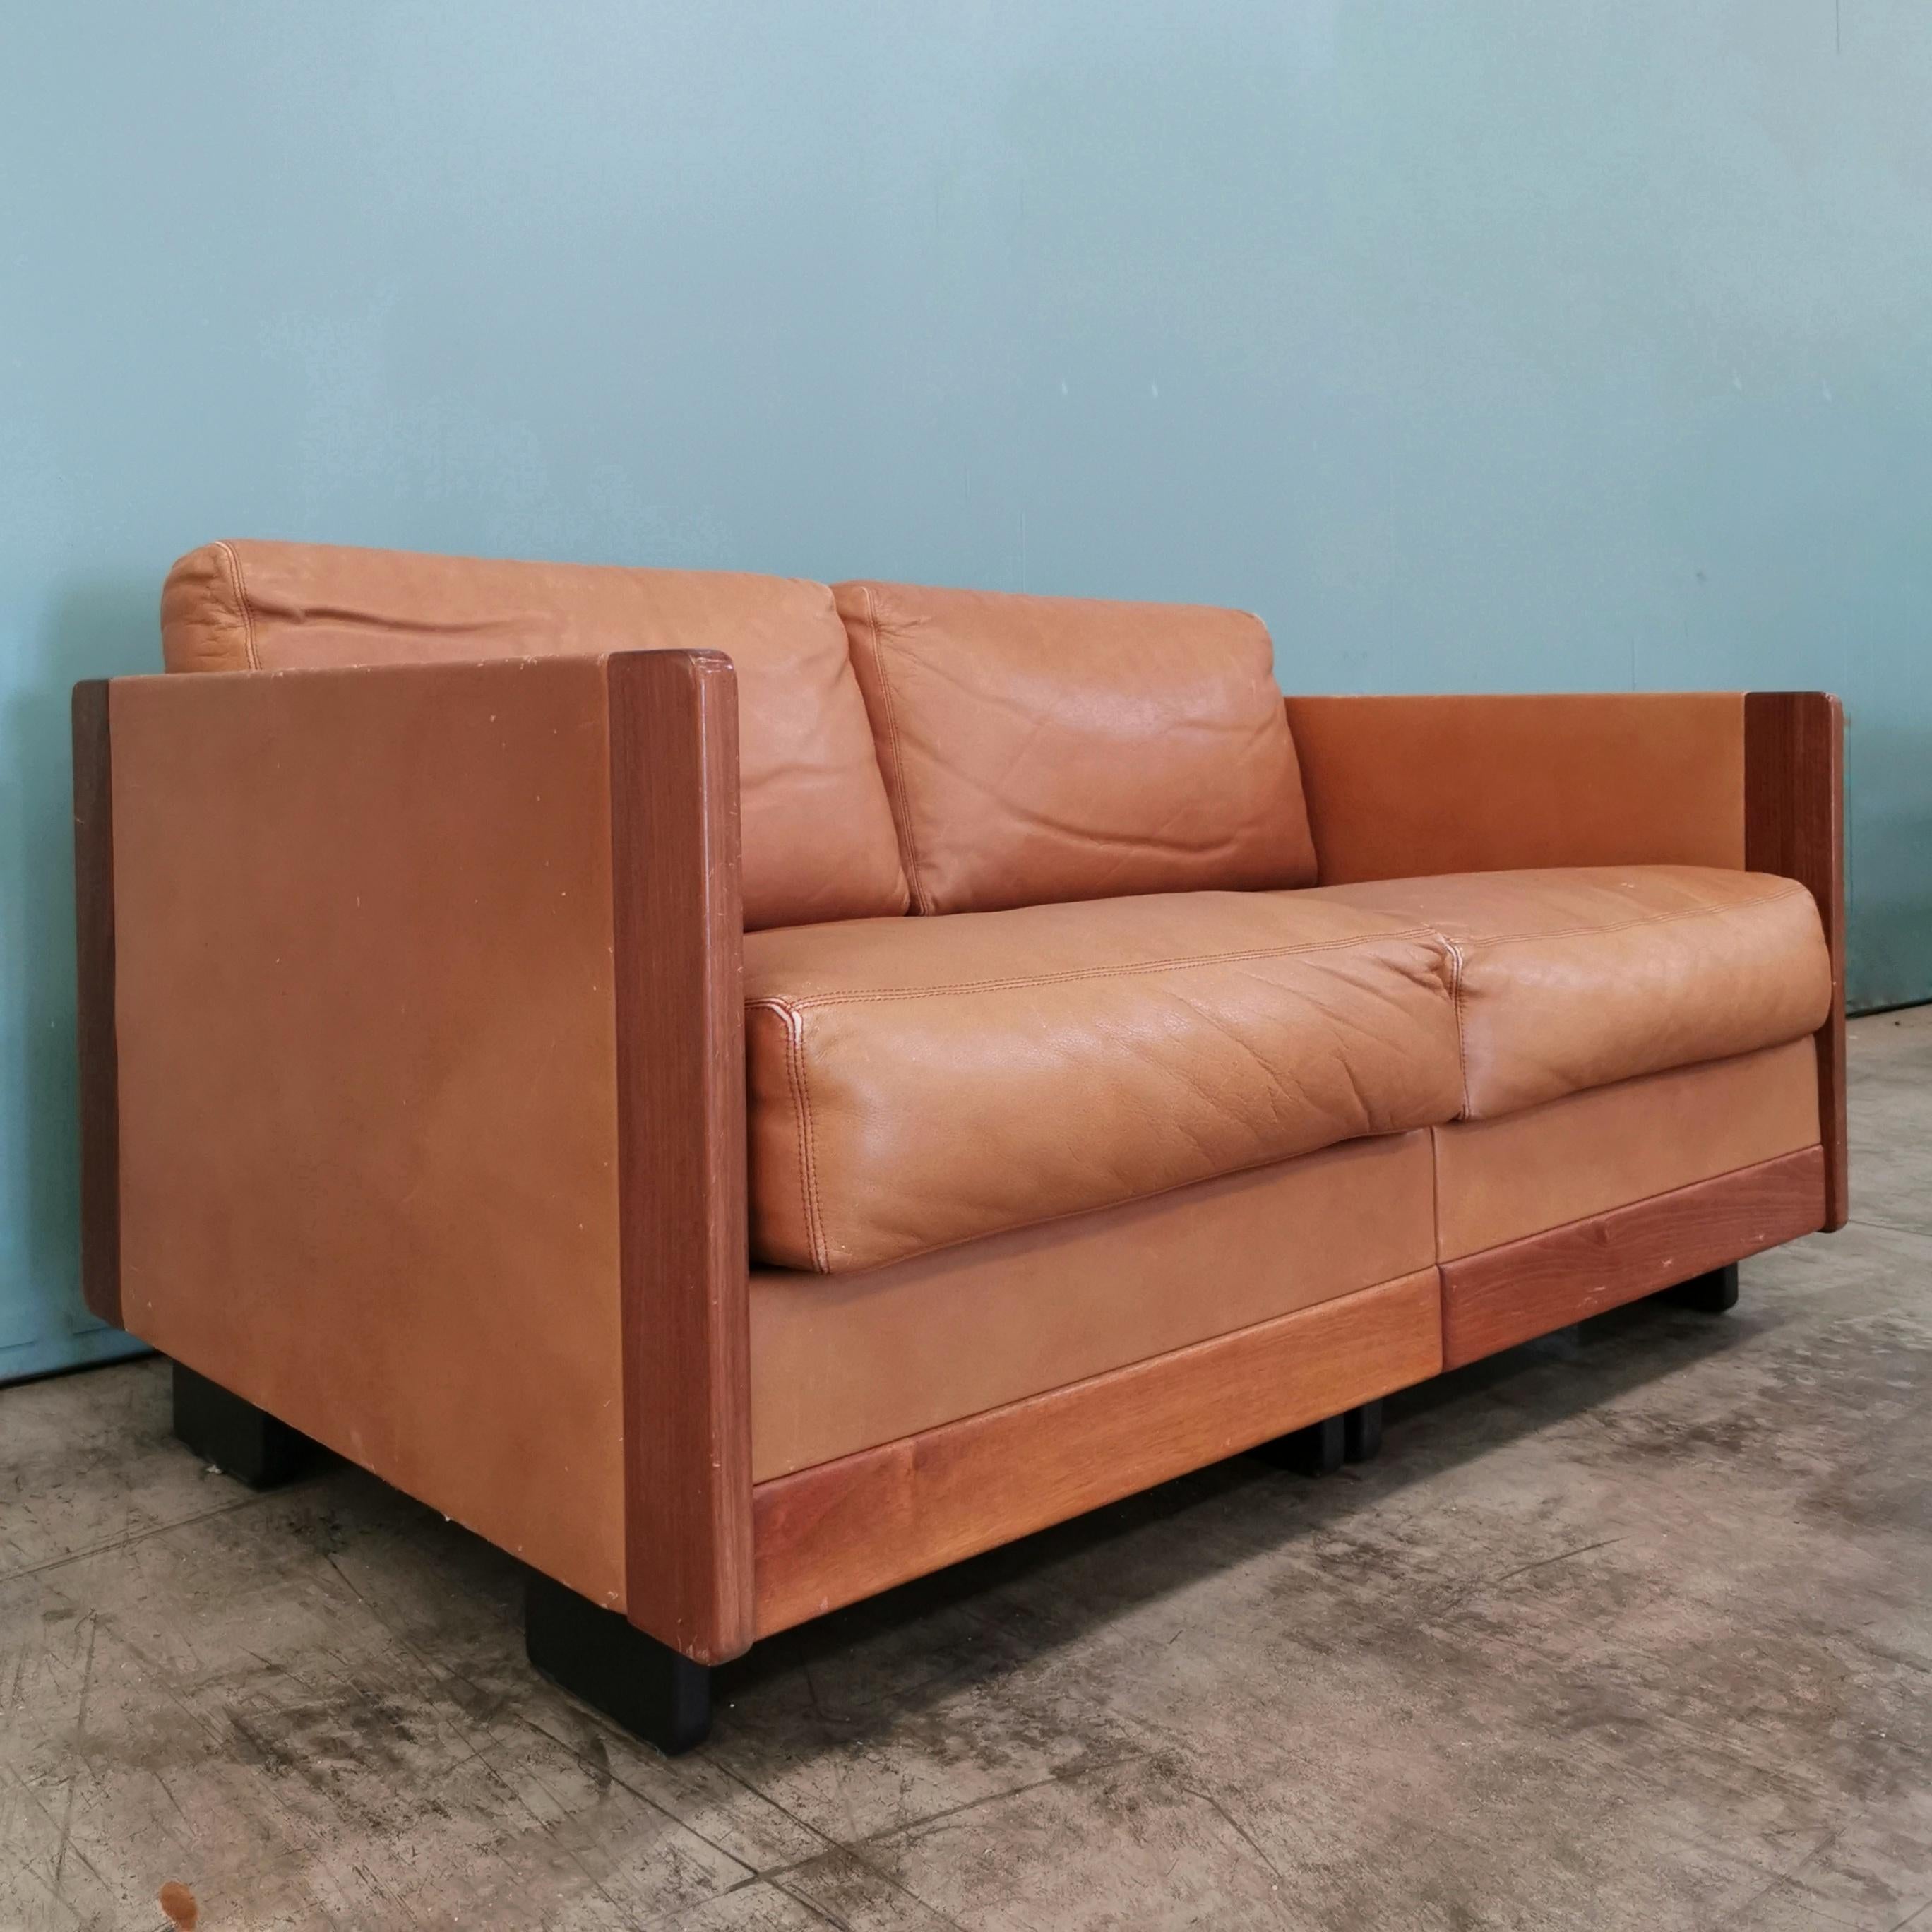 Rara versione del divano 920 di Cassina disegnato da Afra e Tobia Scarpa negli anni 60. Struttura in legno e rivestimento in pelle. Buone condizioni generali con piccoli segni del tempo.